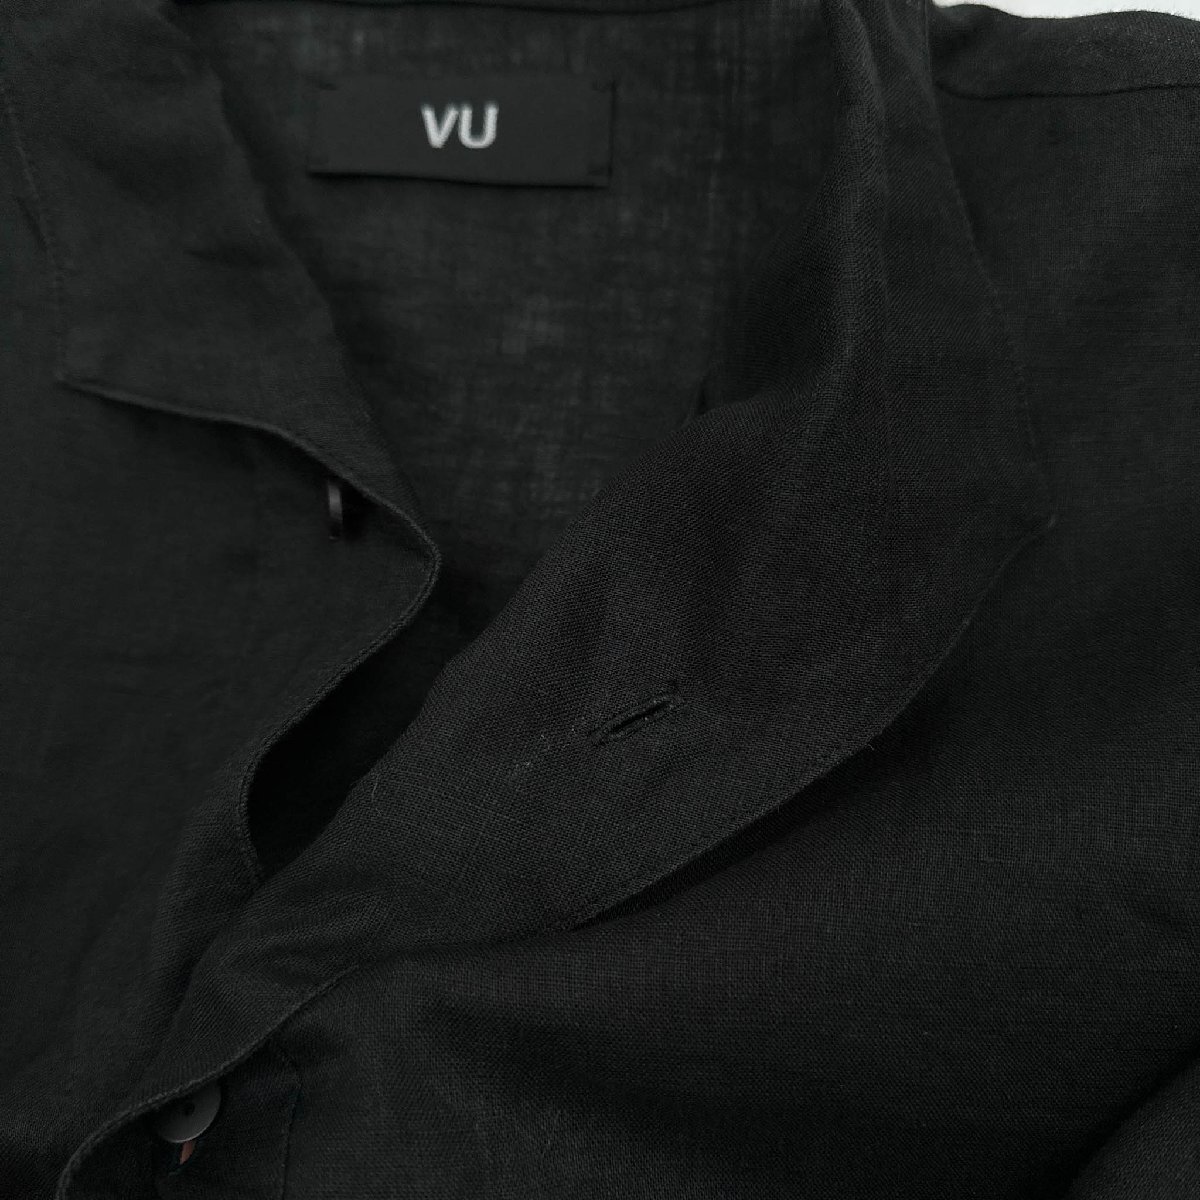 リネン100%◆VU ヴウ オープンカラー 半袖 5分丈 シャツ 麻 サイズ 2/ブラック 黒/メンズ 日本製_画像7